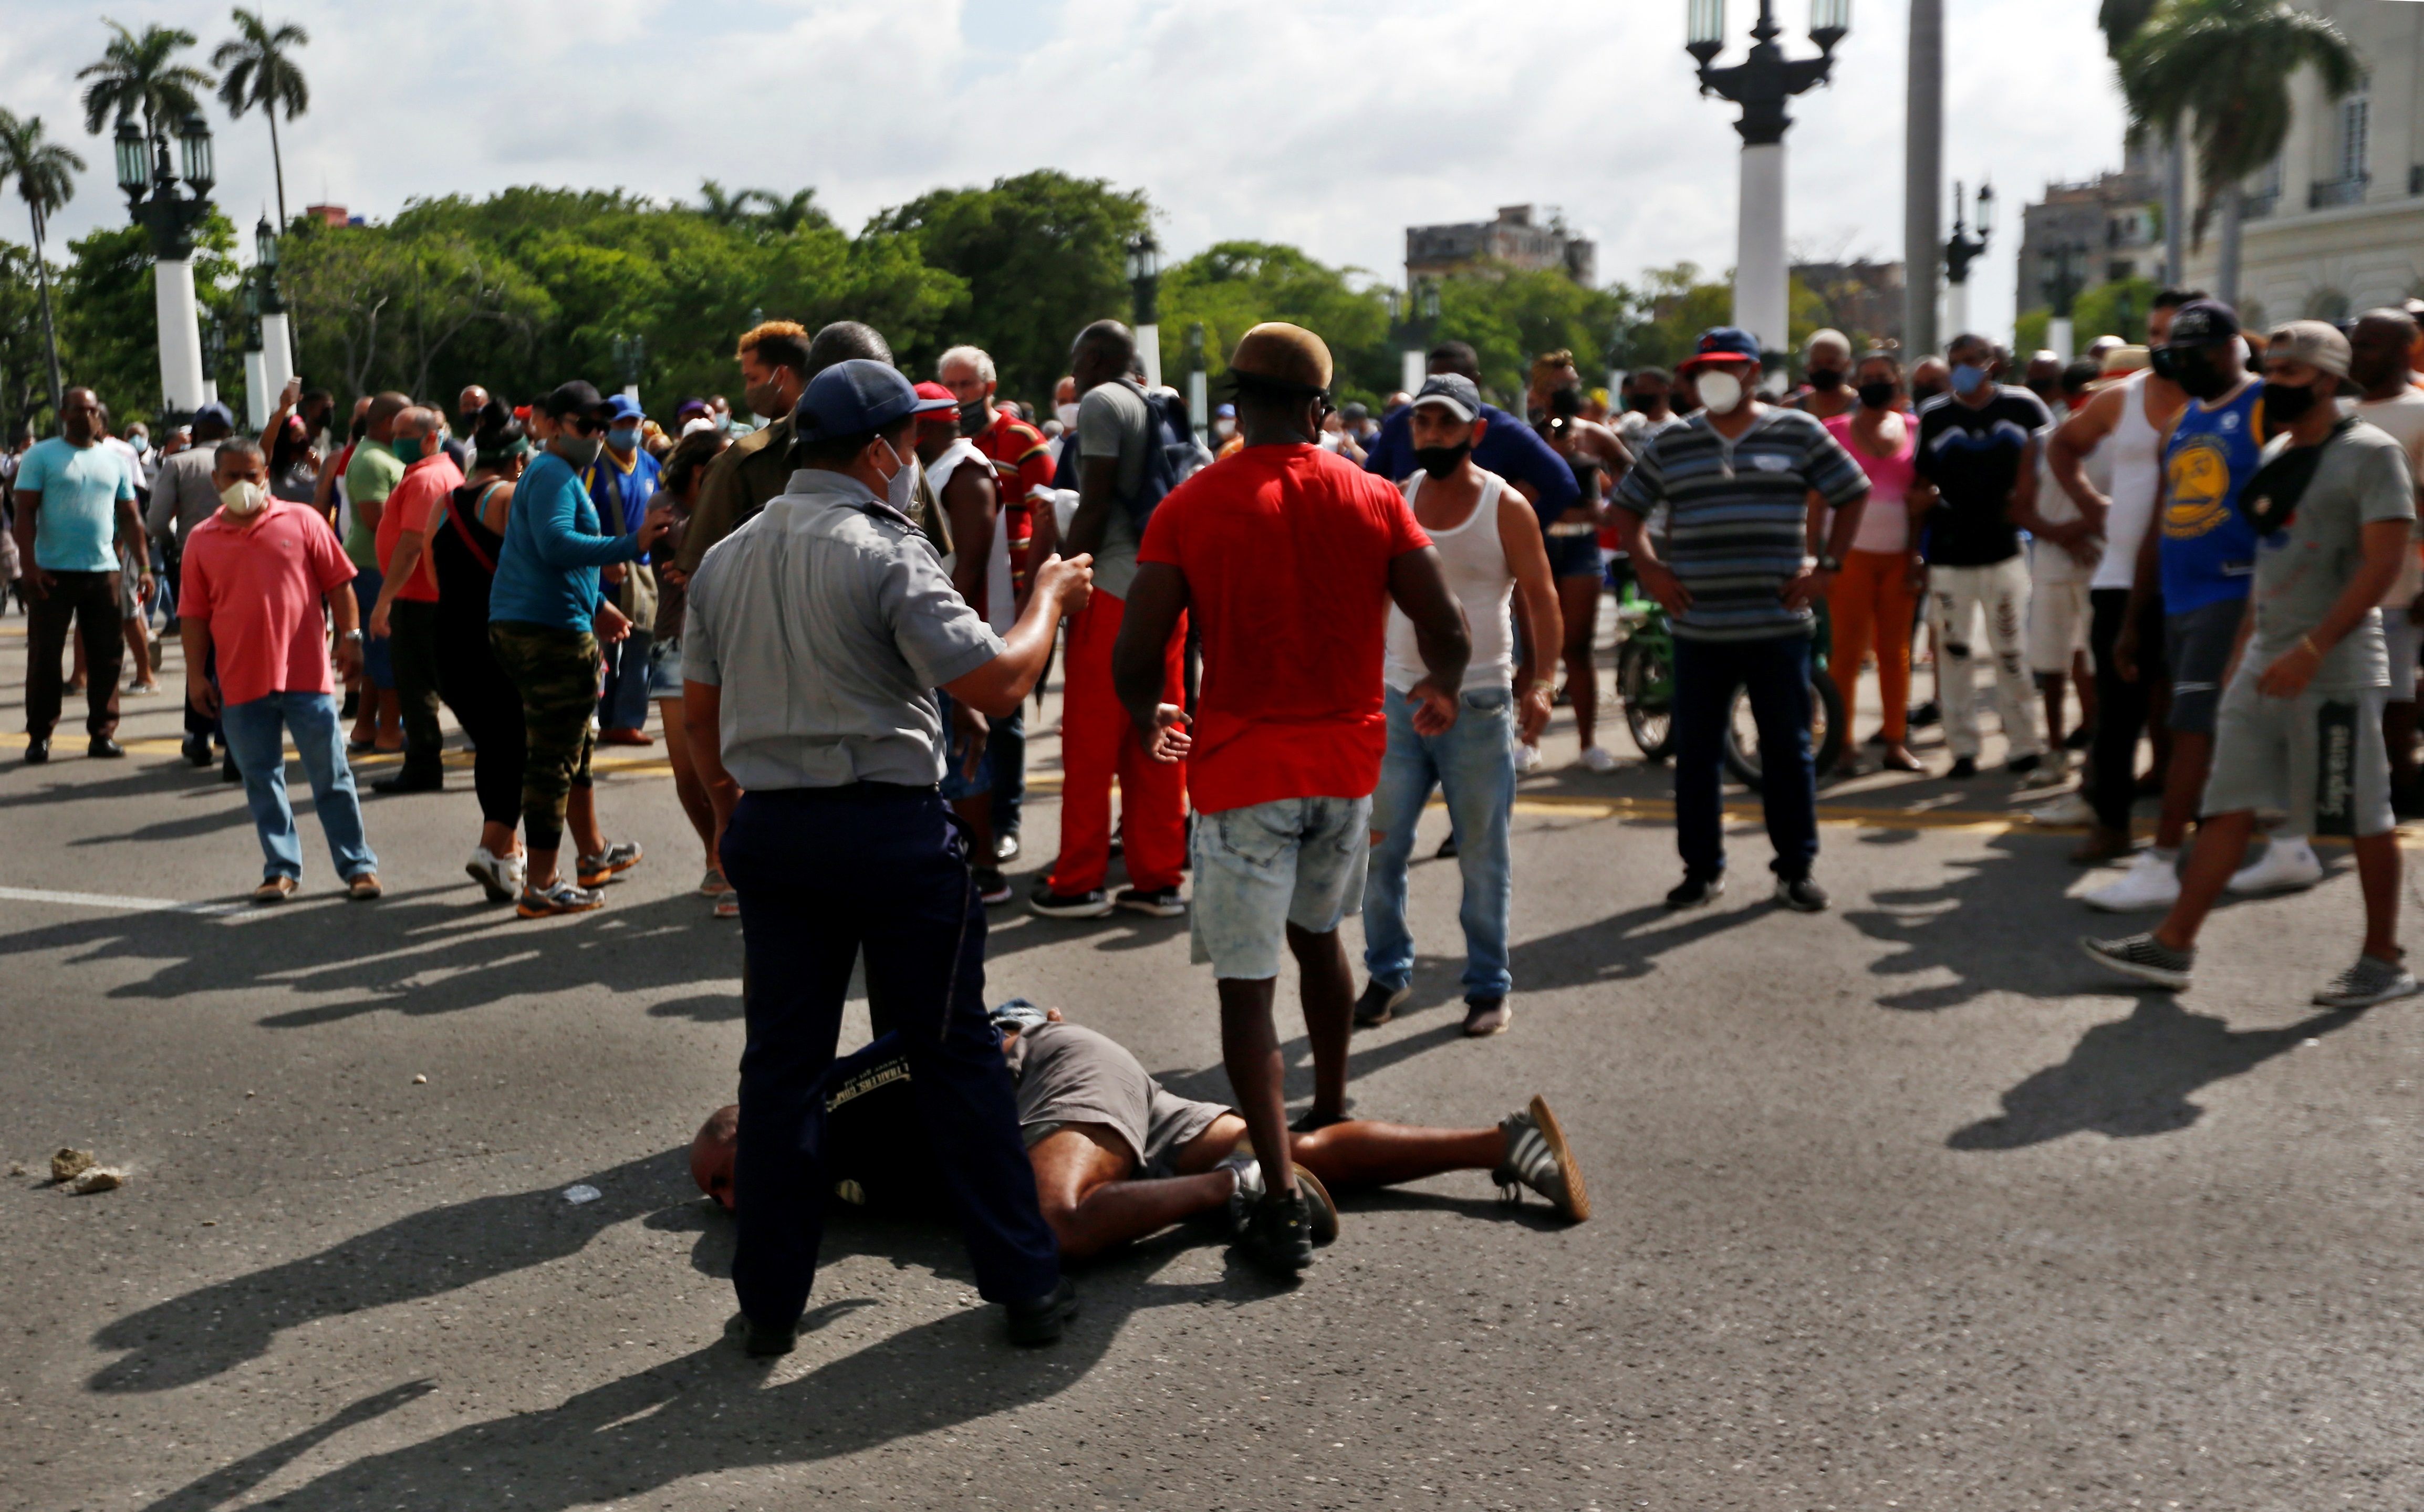 Un hombre permanece en el suelo antes de ser arrestado durante las protestas antigubernamentales, el 11 de julio de 2020, en La Habana, Cuba (EFE/ Ernesto Mastrascusa)